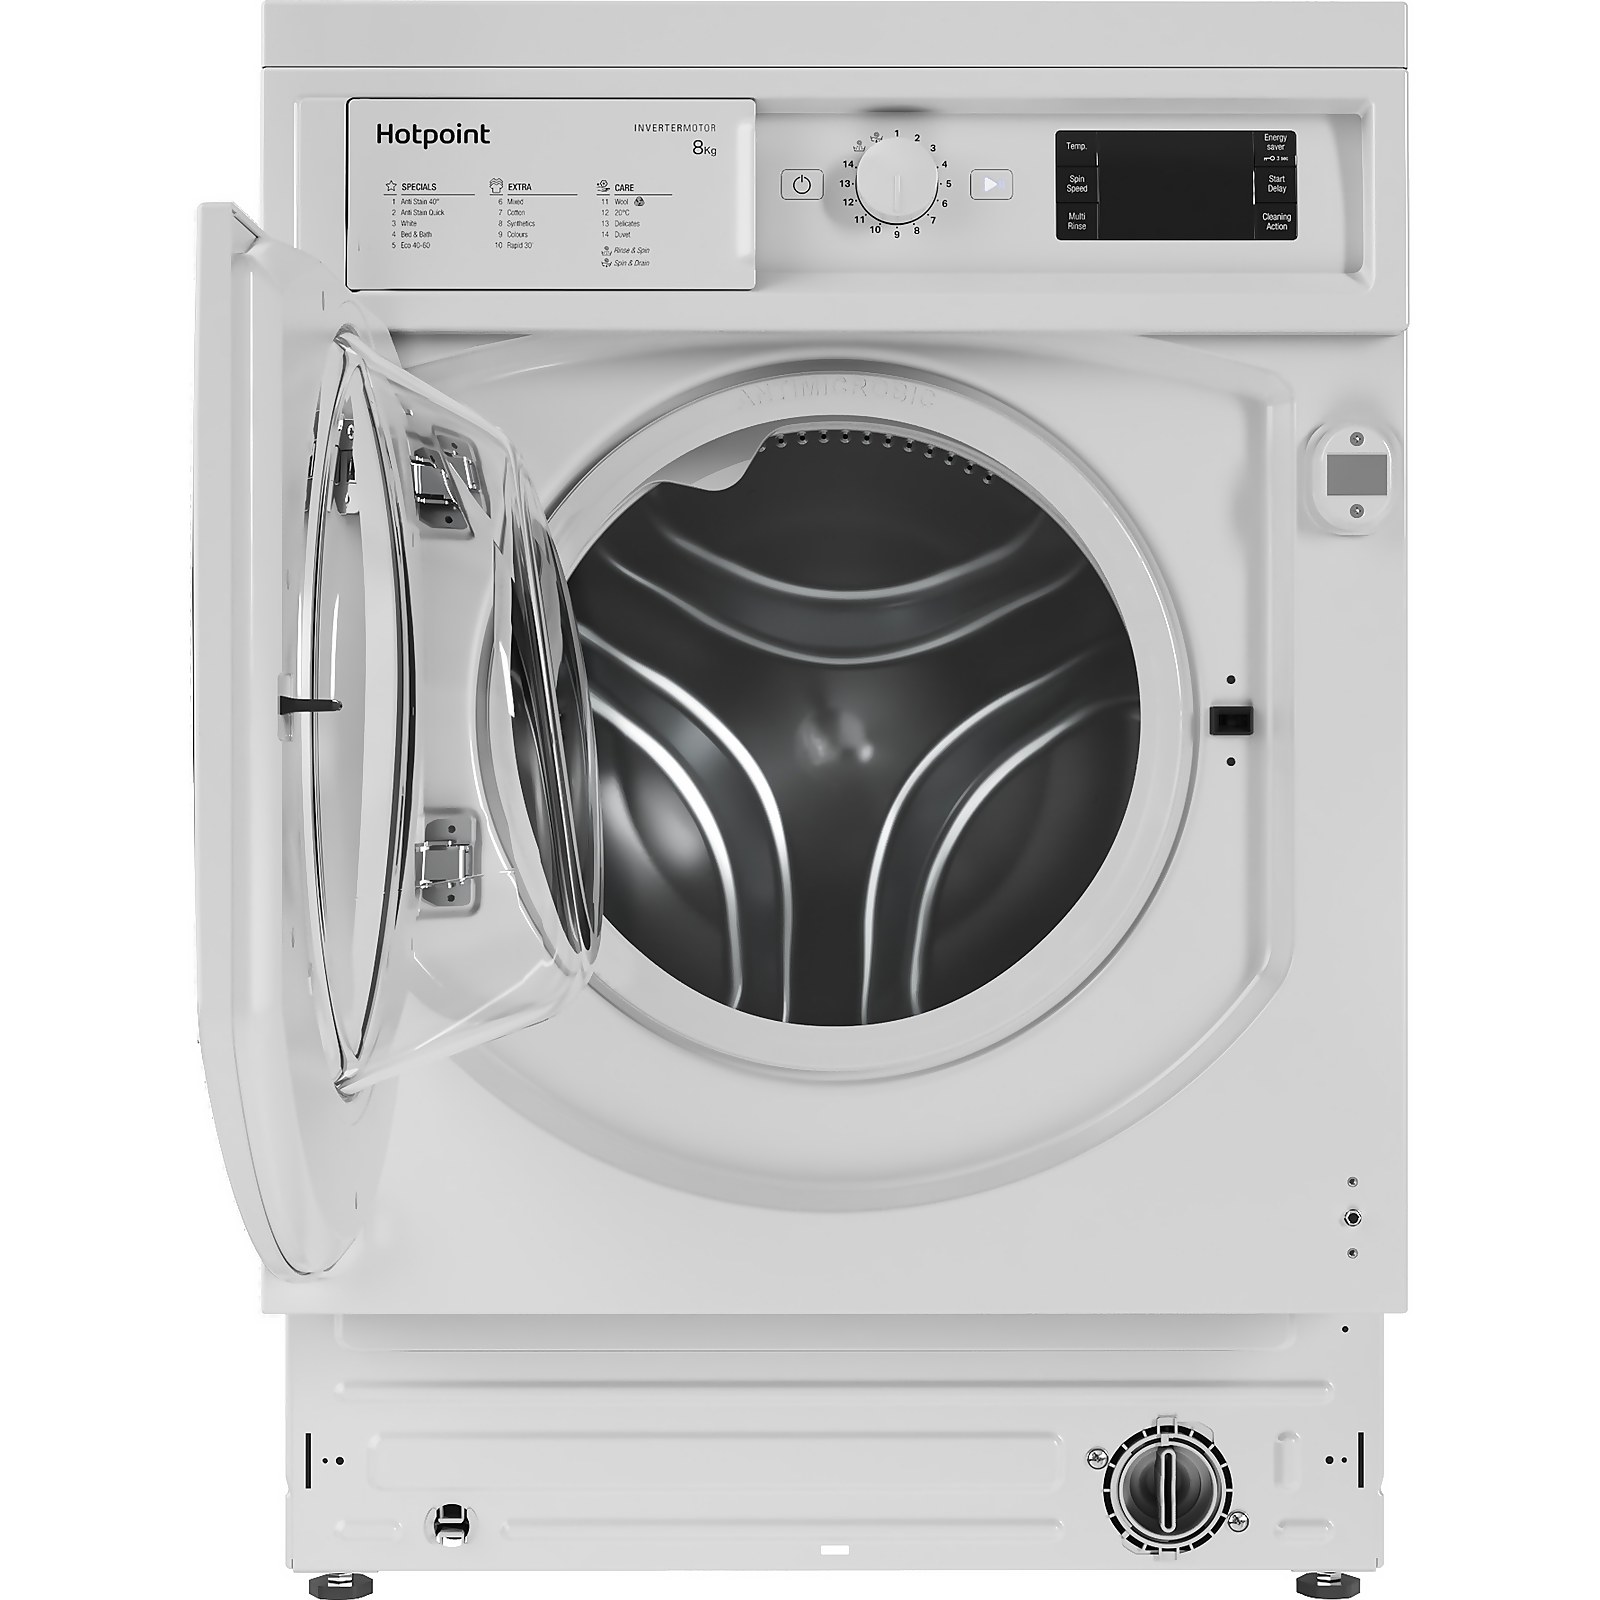 Hotpoint BIWMHG81484UK Integrated 8Kg Washing Machine with 1400 rpm - White